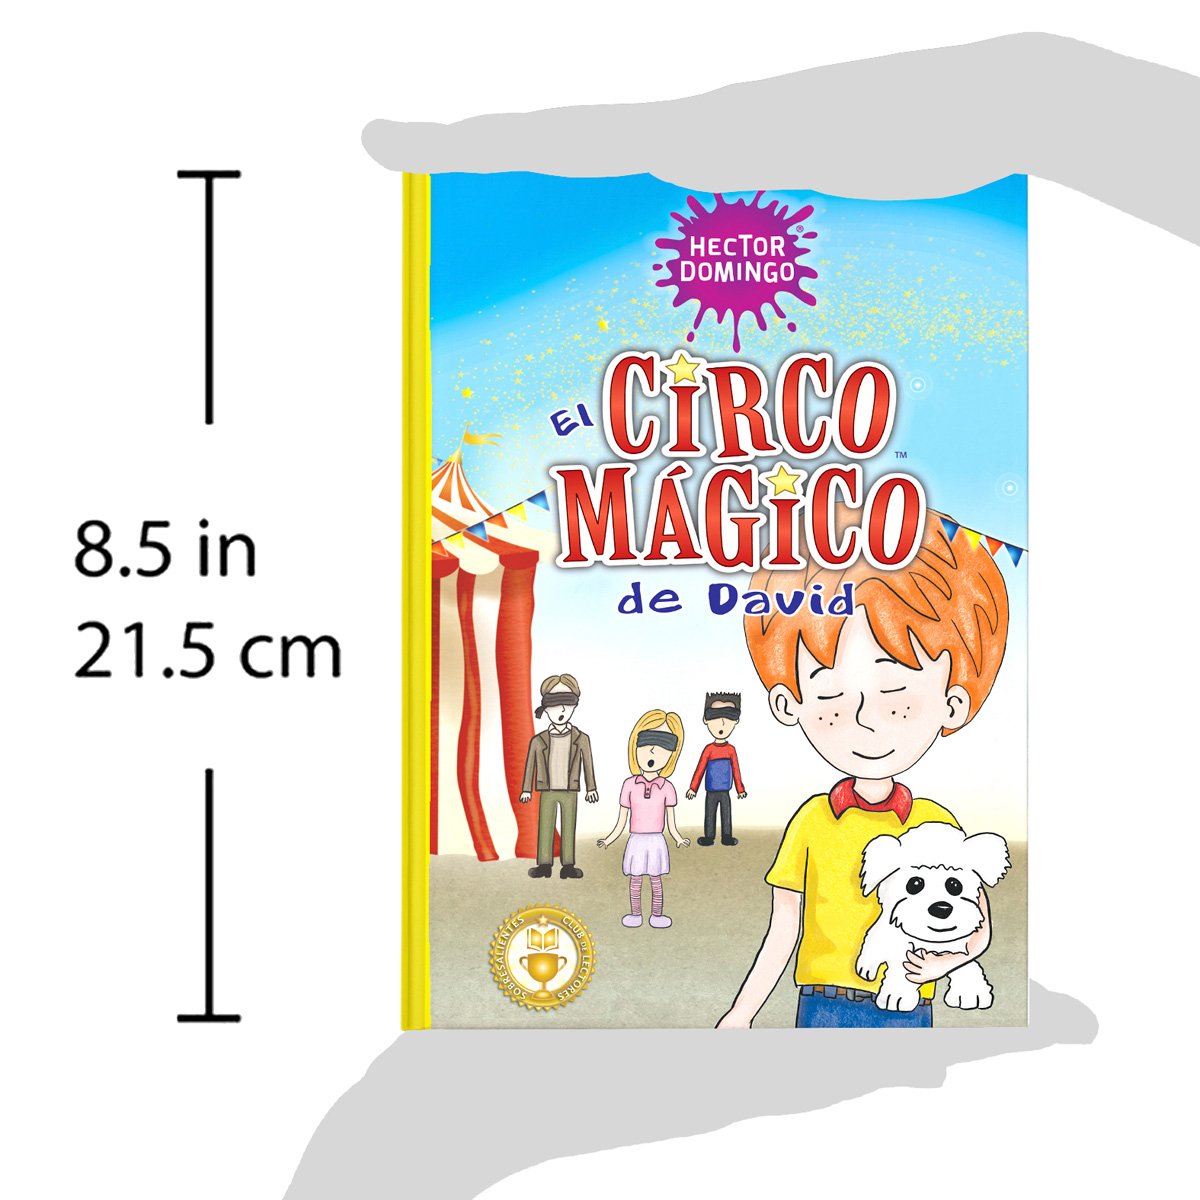 Paquete de libros infantiles Héctor Domingo para estimular la lectura en niños